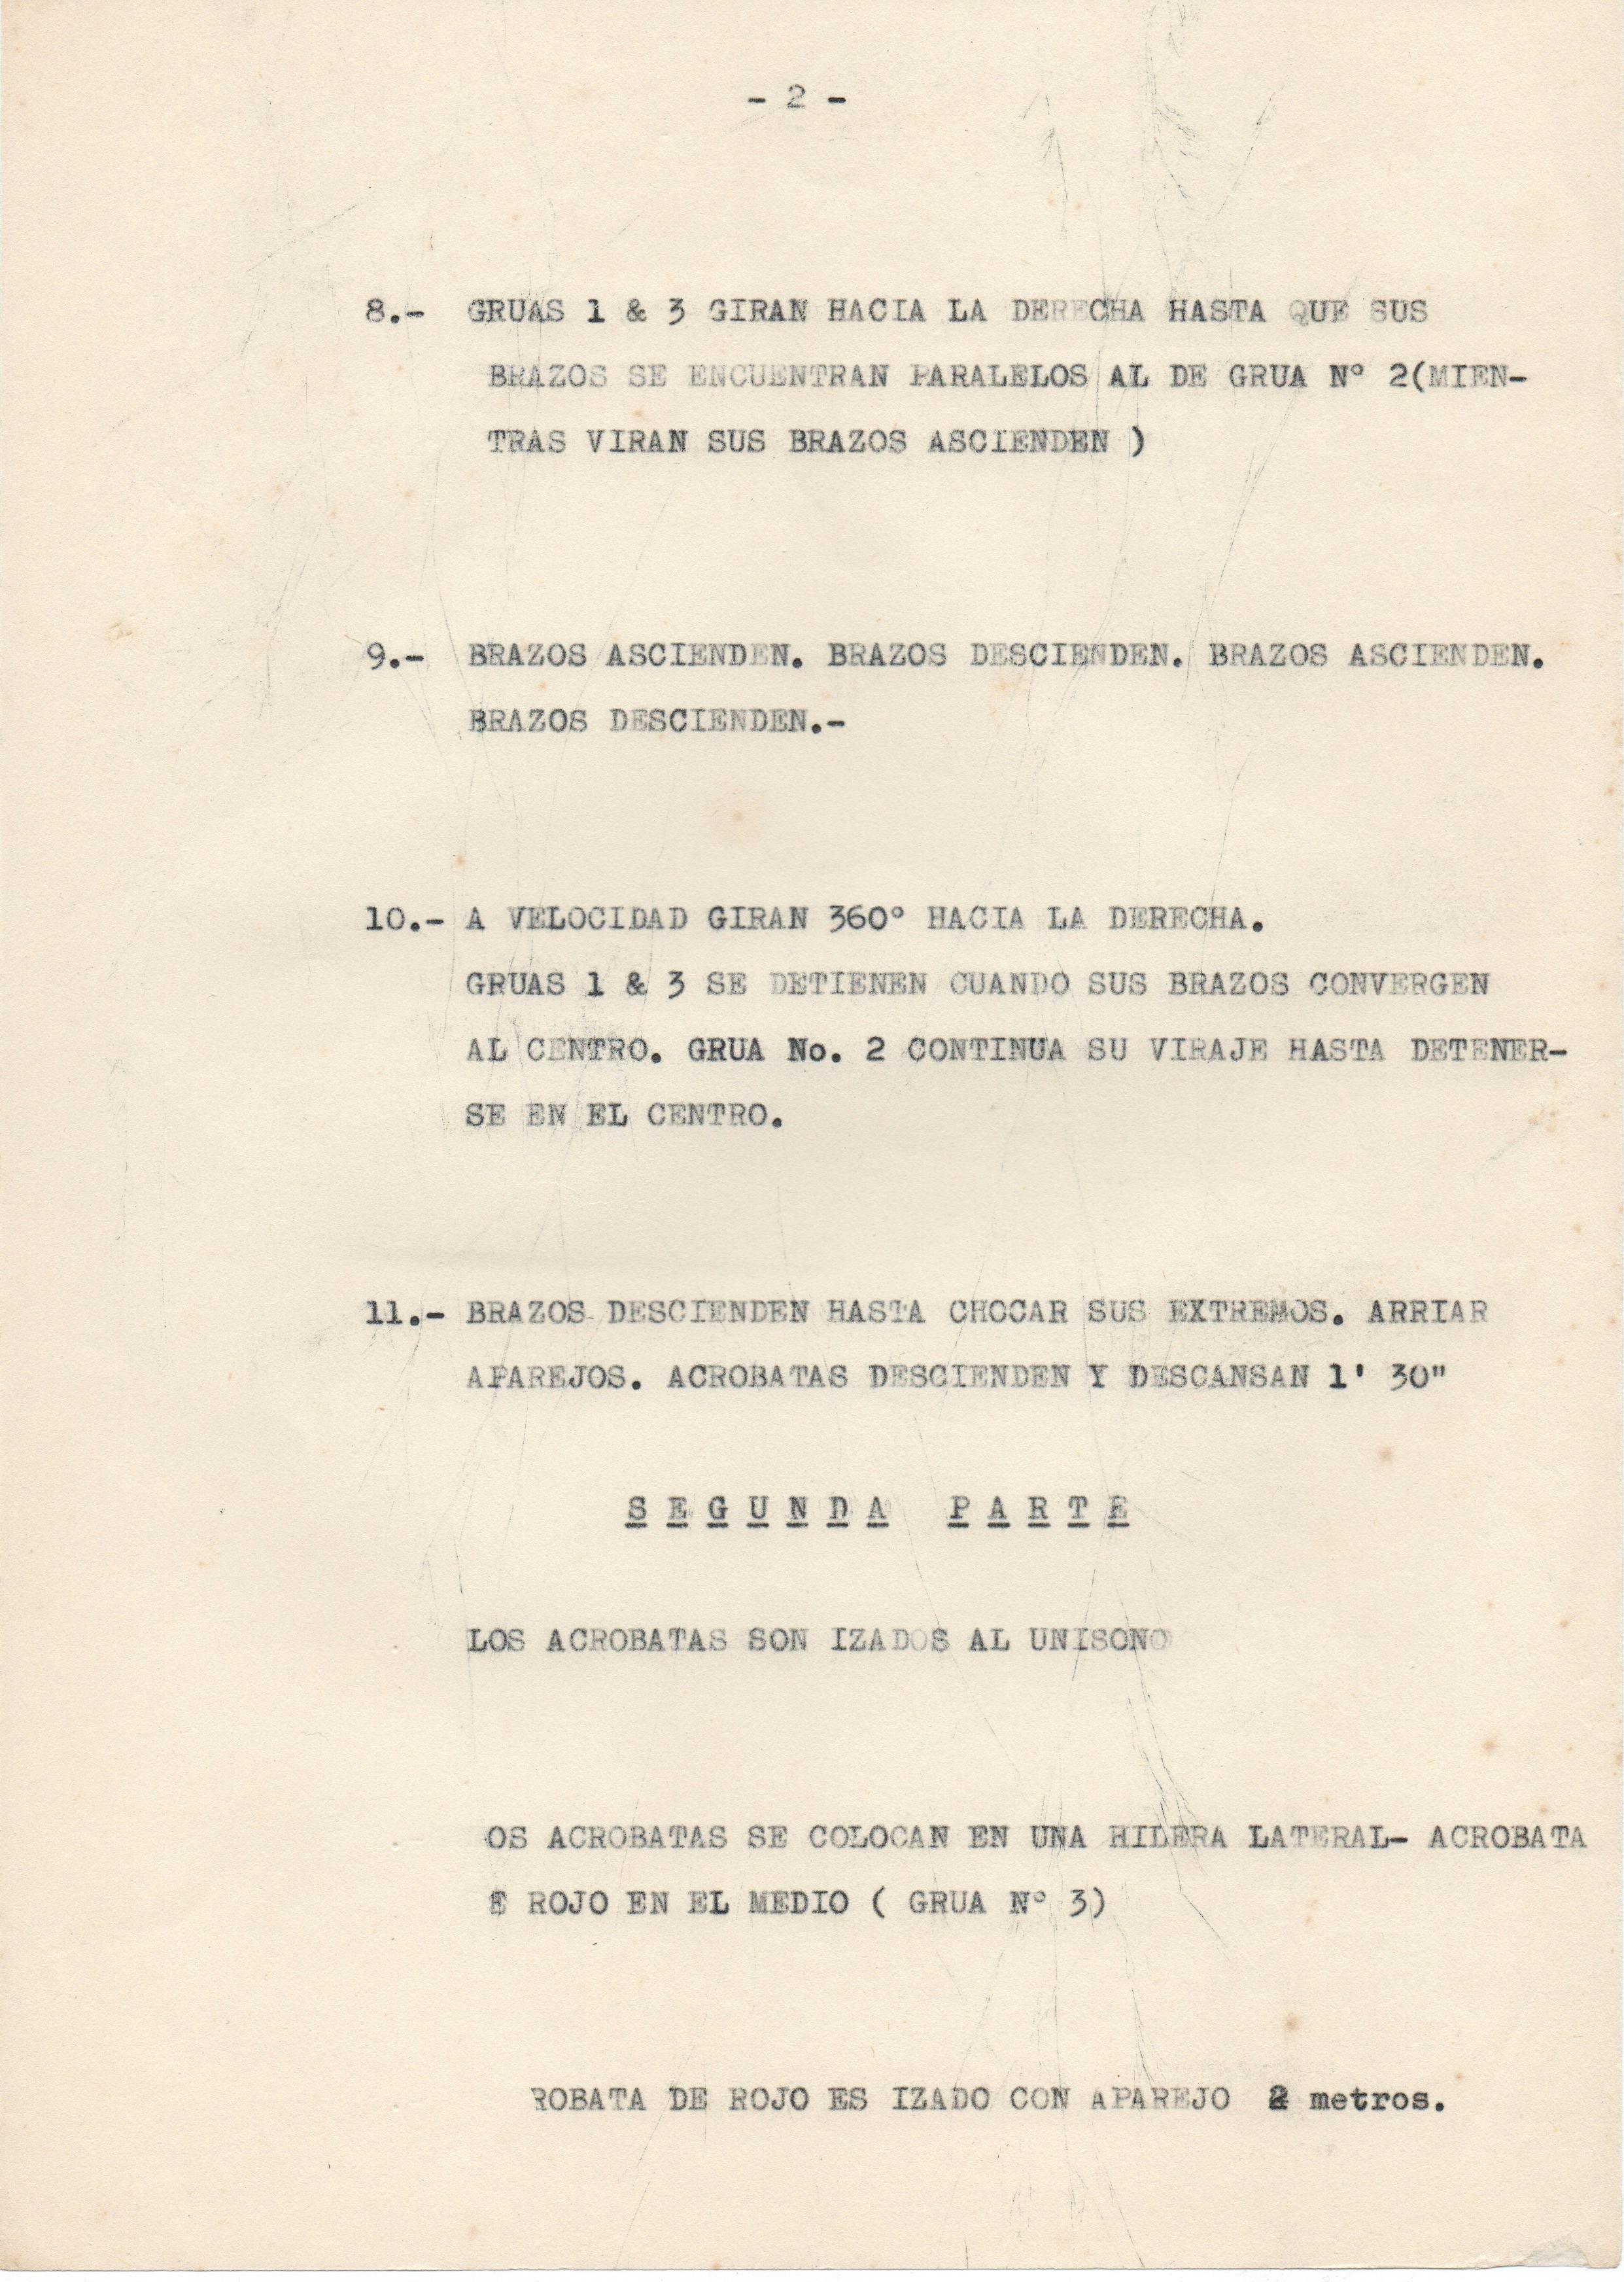 The image shows an aged sheet of typewritten paper, labeled “page two” of the “music sheet” or list of choreographed actions for Leopoldo Maler’s Crane Ballet. Actions 8 through 11 appear below:   “8. GRÚAS 1 & 3 GIRAN HACIA LA DERECHA HASTA QUE SUS BRAZOS SE ENCUENTRAN PARALELOS AL DE GRÚA N° 2 (MIEN TRAS VIRAN SUS BRAZOS ASCIENDEN)   “9. BRAZOS ASCIENDEN, BRAZOS DESCIENDEN. BRAZOS ASCIENDEN, BRAZOS DESCIENDEN.   “10. A VELOCIDAD GIRAN 360° HACIA LA DERECHA, GRÚAS 1 & 3 SE DETIENEN CUANDO SUS BRAZOS CONVERGEN AL CENTRO. GRÚA NO. 2 CONTINUA SU VIRAJE HASTA DETENERSE EN EL CENTRO.   “11. BRAZOS DESCIENDEN HASIA CHOCAR SUS EXTREMOS. ARRIAR A PAREJOS. ACRÓBATAS DESCIENDEN Y DESCANSAN 1' 30.”      In the lower part of the paper, the first three actions of the second part are described but not numbered:   “SEGUNDA PARTE   “LOS ACRÓBATAS SON IZADOS AL UNÍSONO   “0S ACRóBATAS SE COLOCAN EN UNA HILERA LATERAL—ACRÓBATA E ROJO EN EL MEDIO (GRÚA N° 3)   “RÓBATA DE ROJO ES IZADO CON APAREJO 2 metros.”